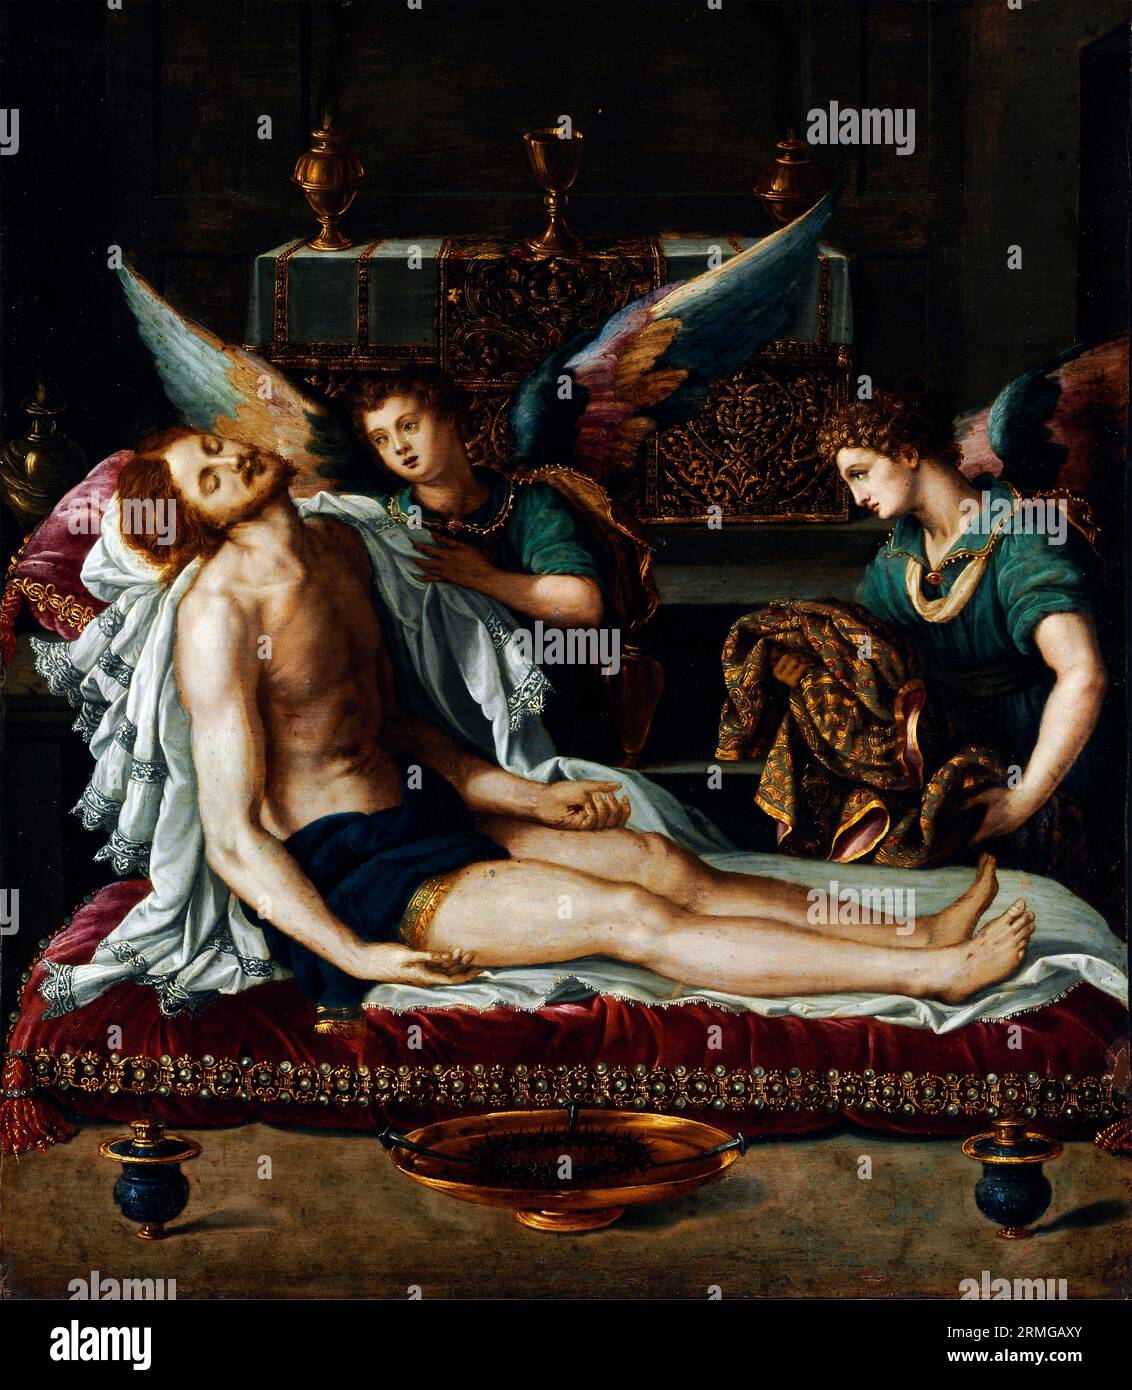 Le corps du Christ aux deux anges de Alessandro Allori (1535-1607), huile sur cuivre, début des années 1590 Banque D'Images